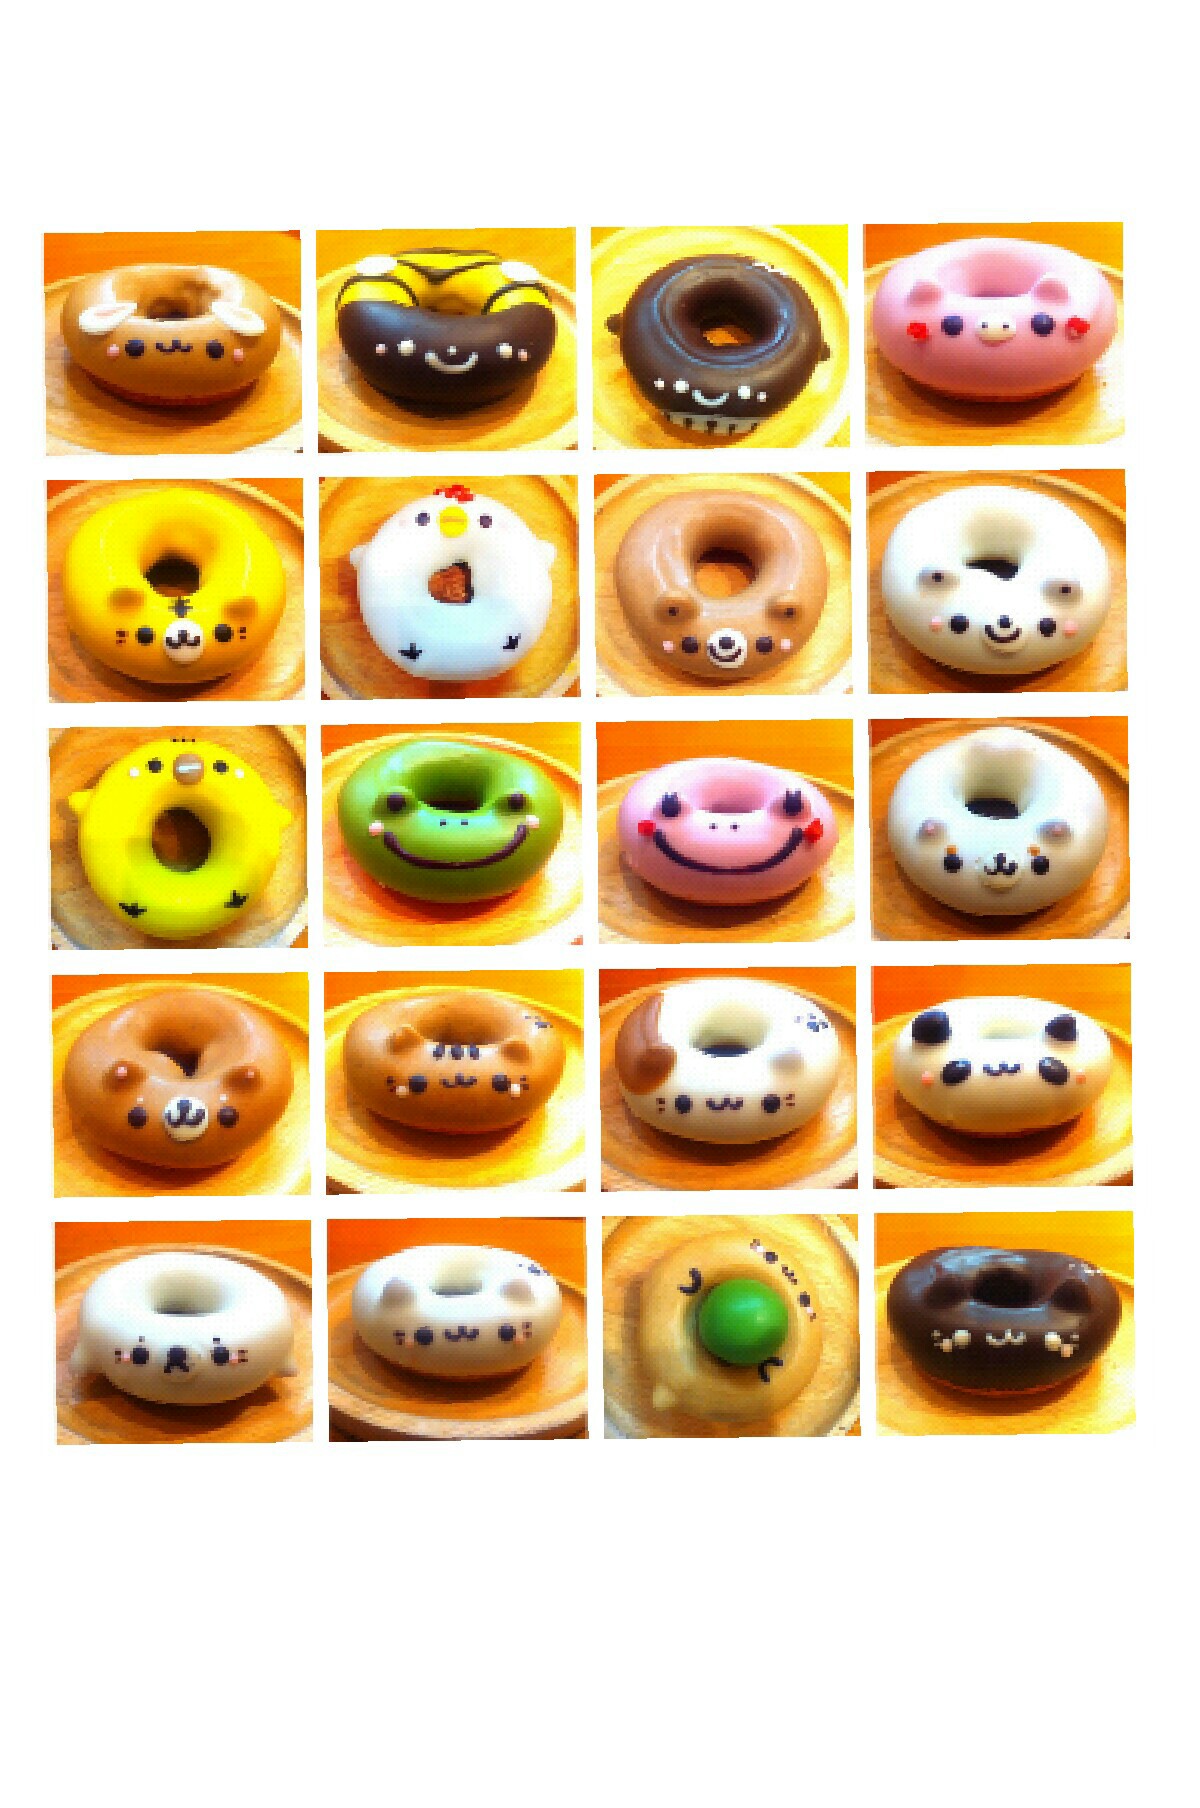 cute donuts!